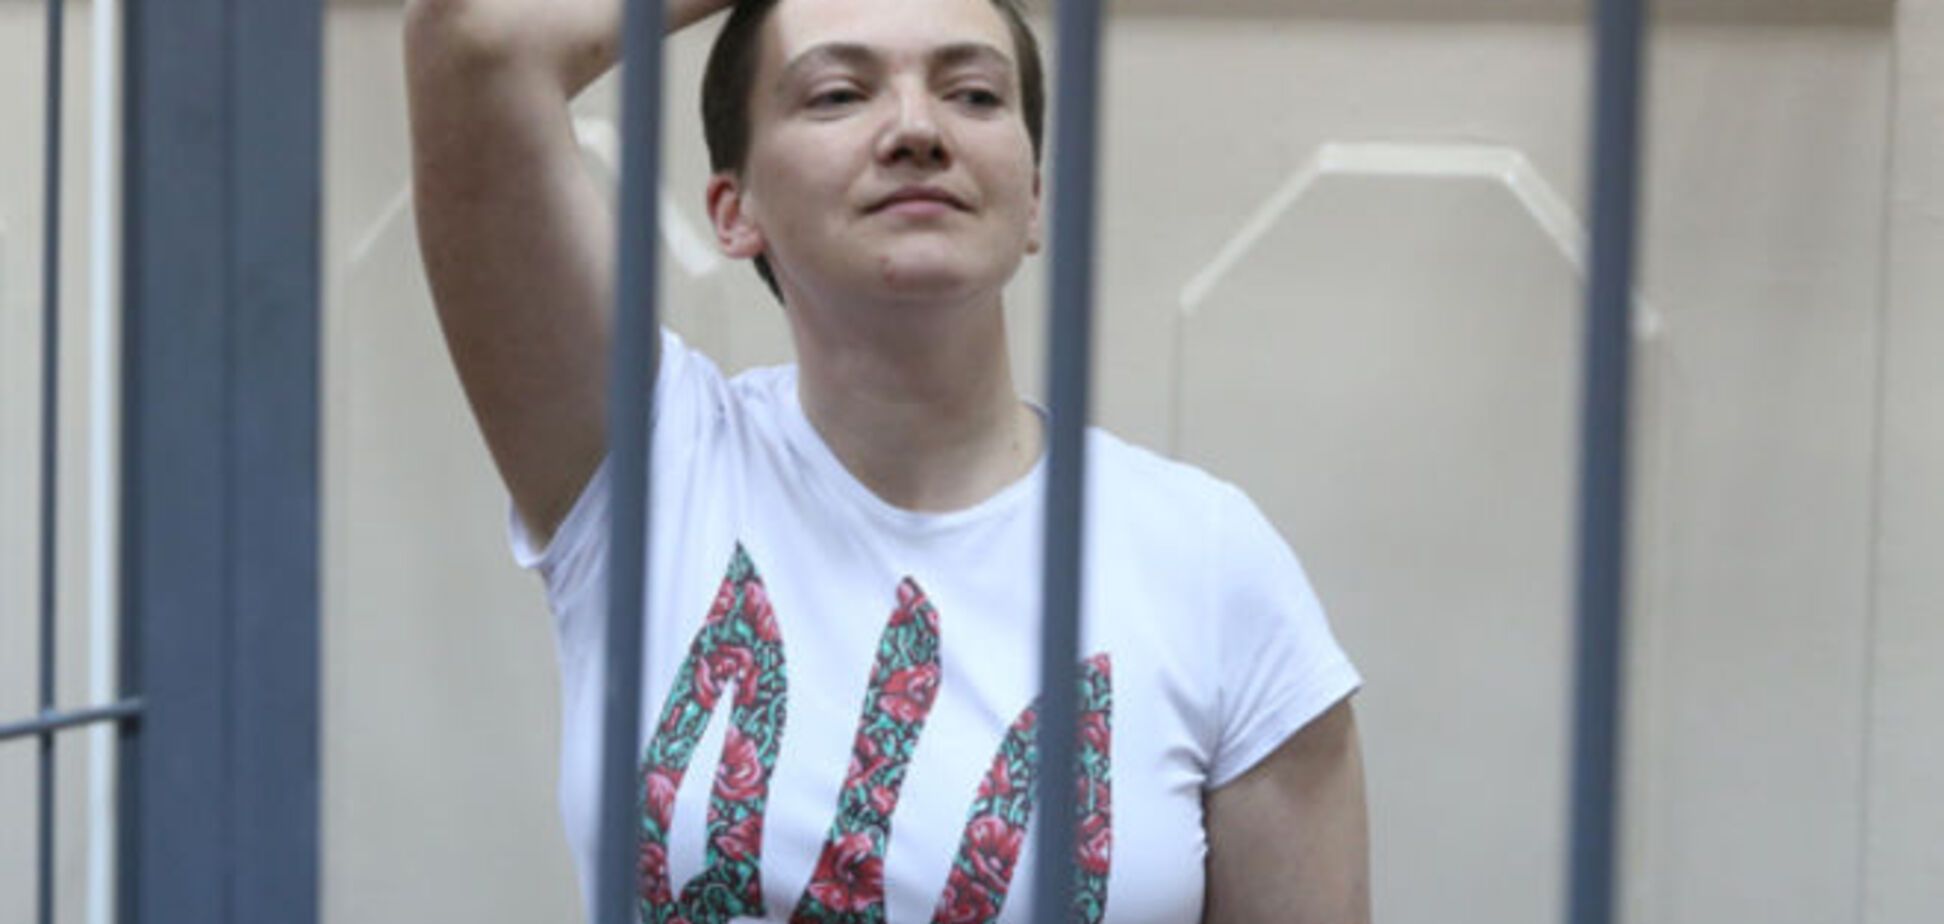 Следком России предъявил окончательное обвинение Савченко